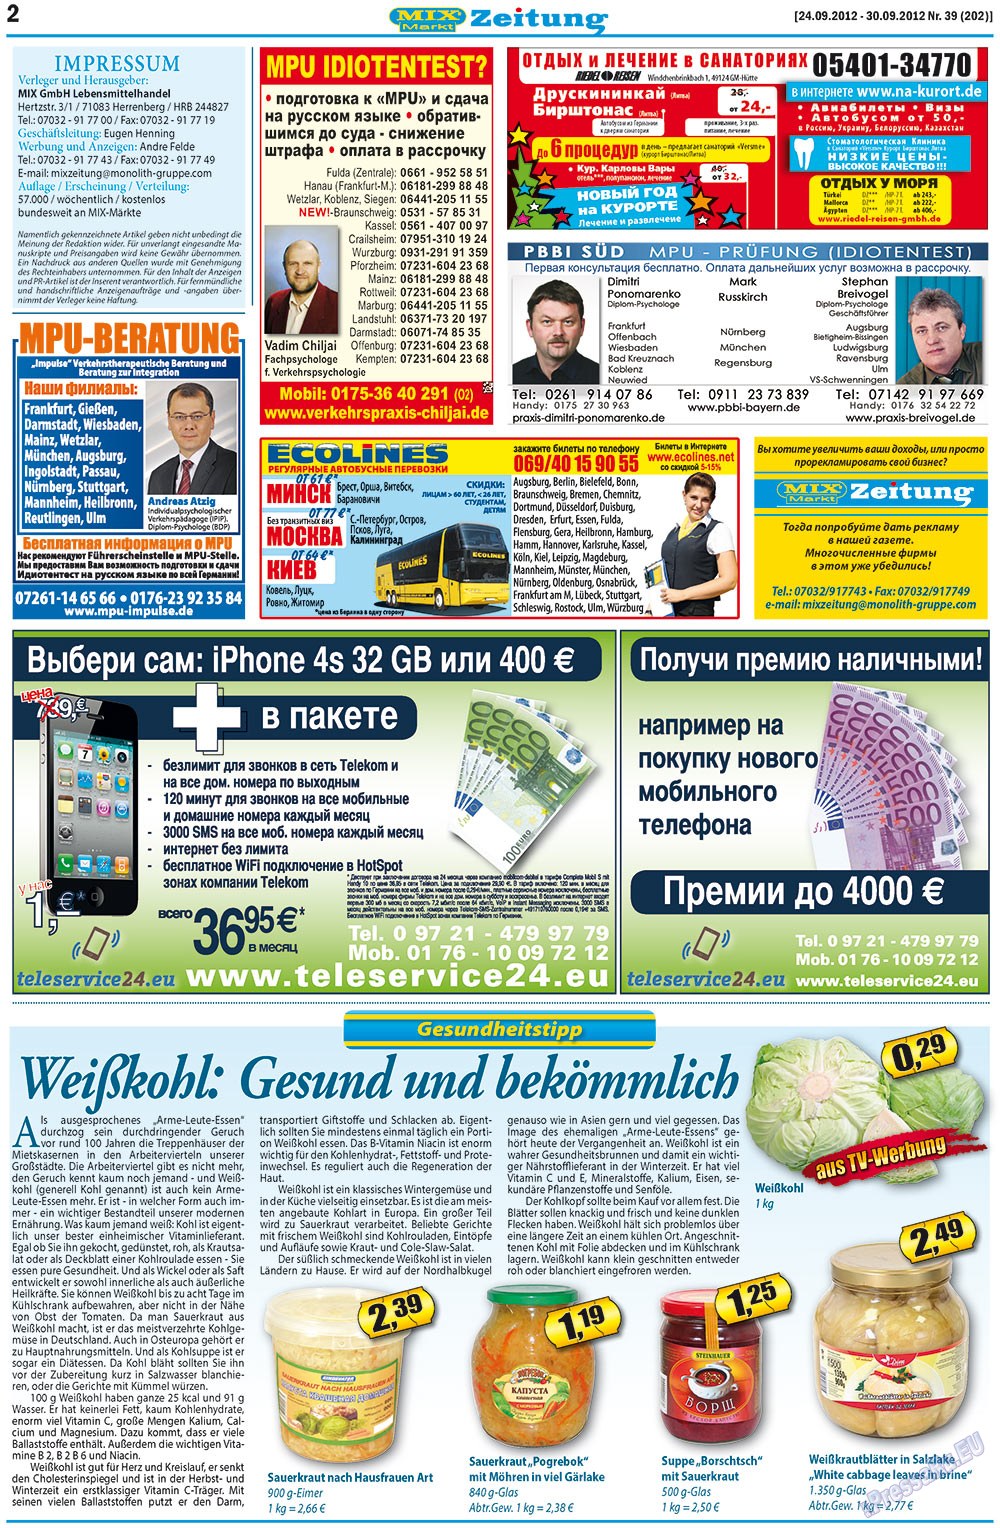 MIX-Markt Zeitung (Zeitung). 2012 Jahr, Ausgabe 39, Seite 2